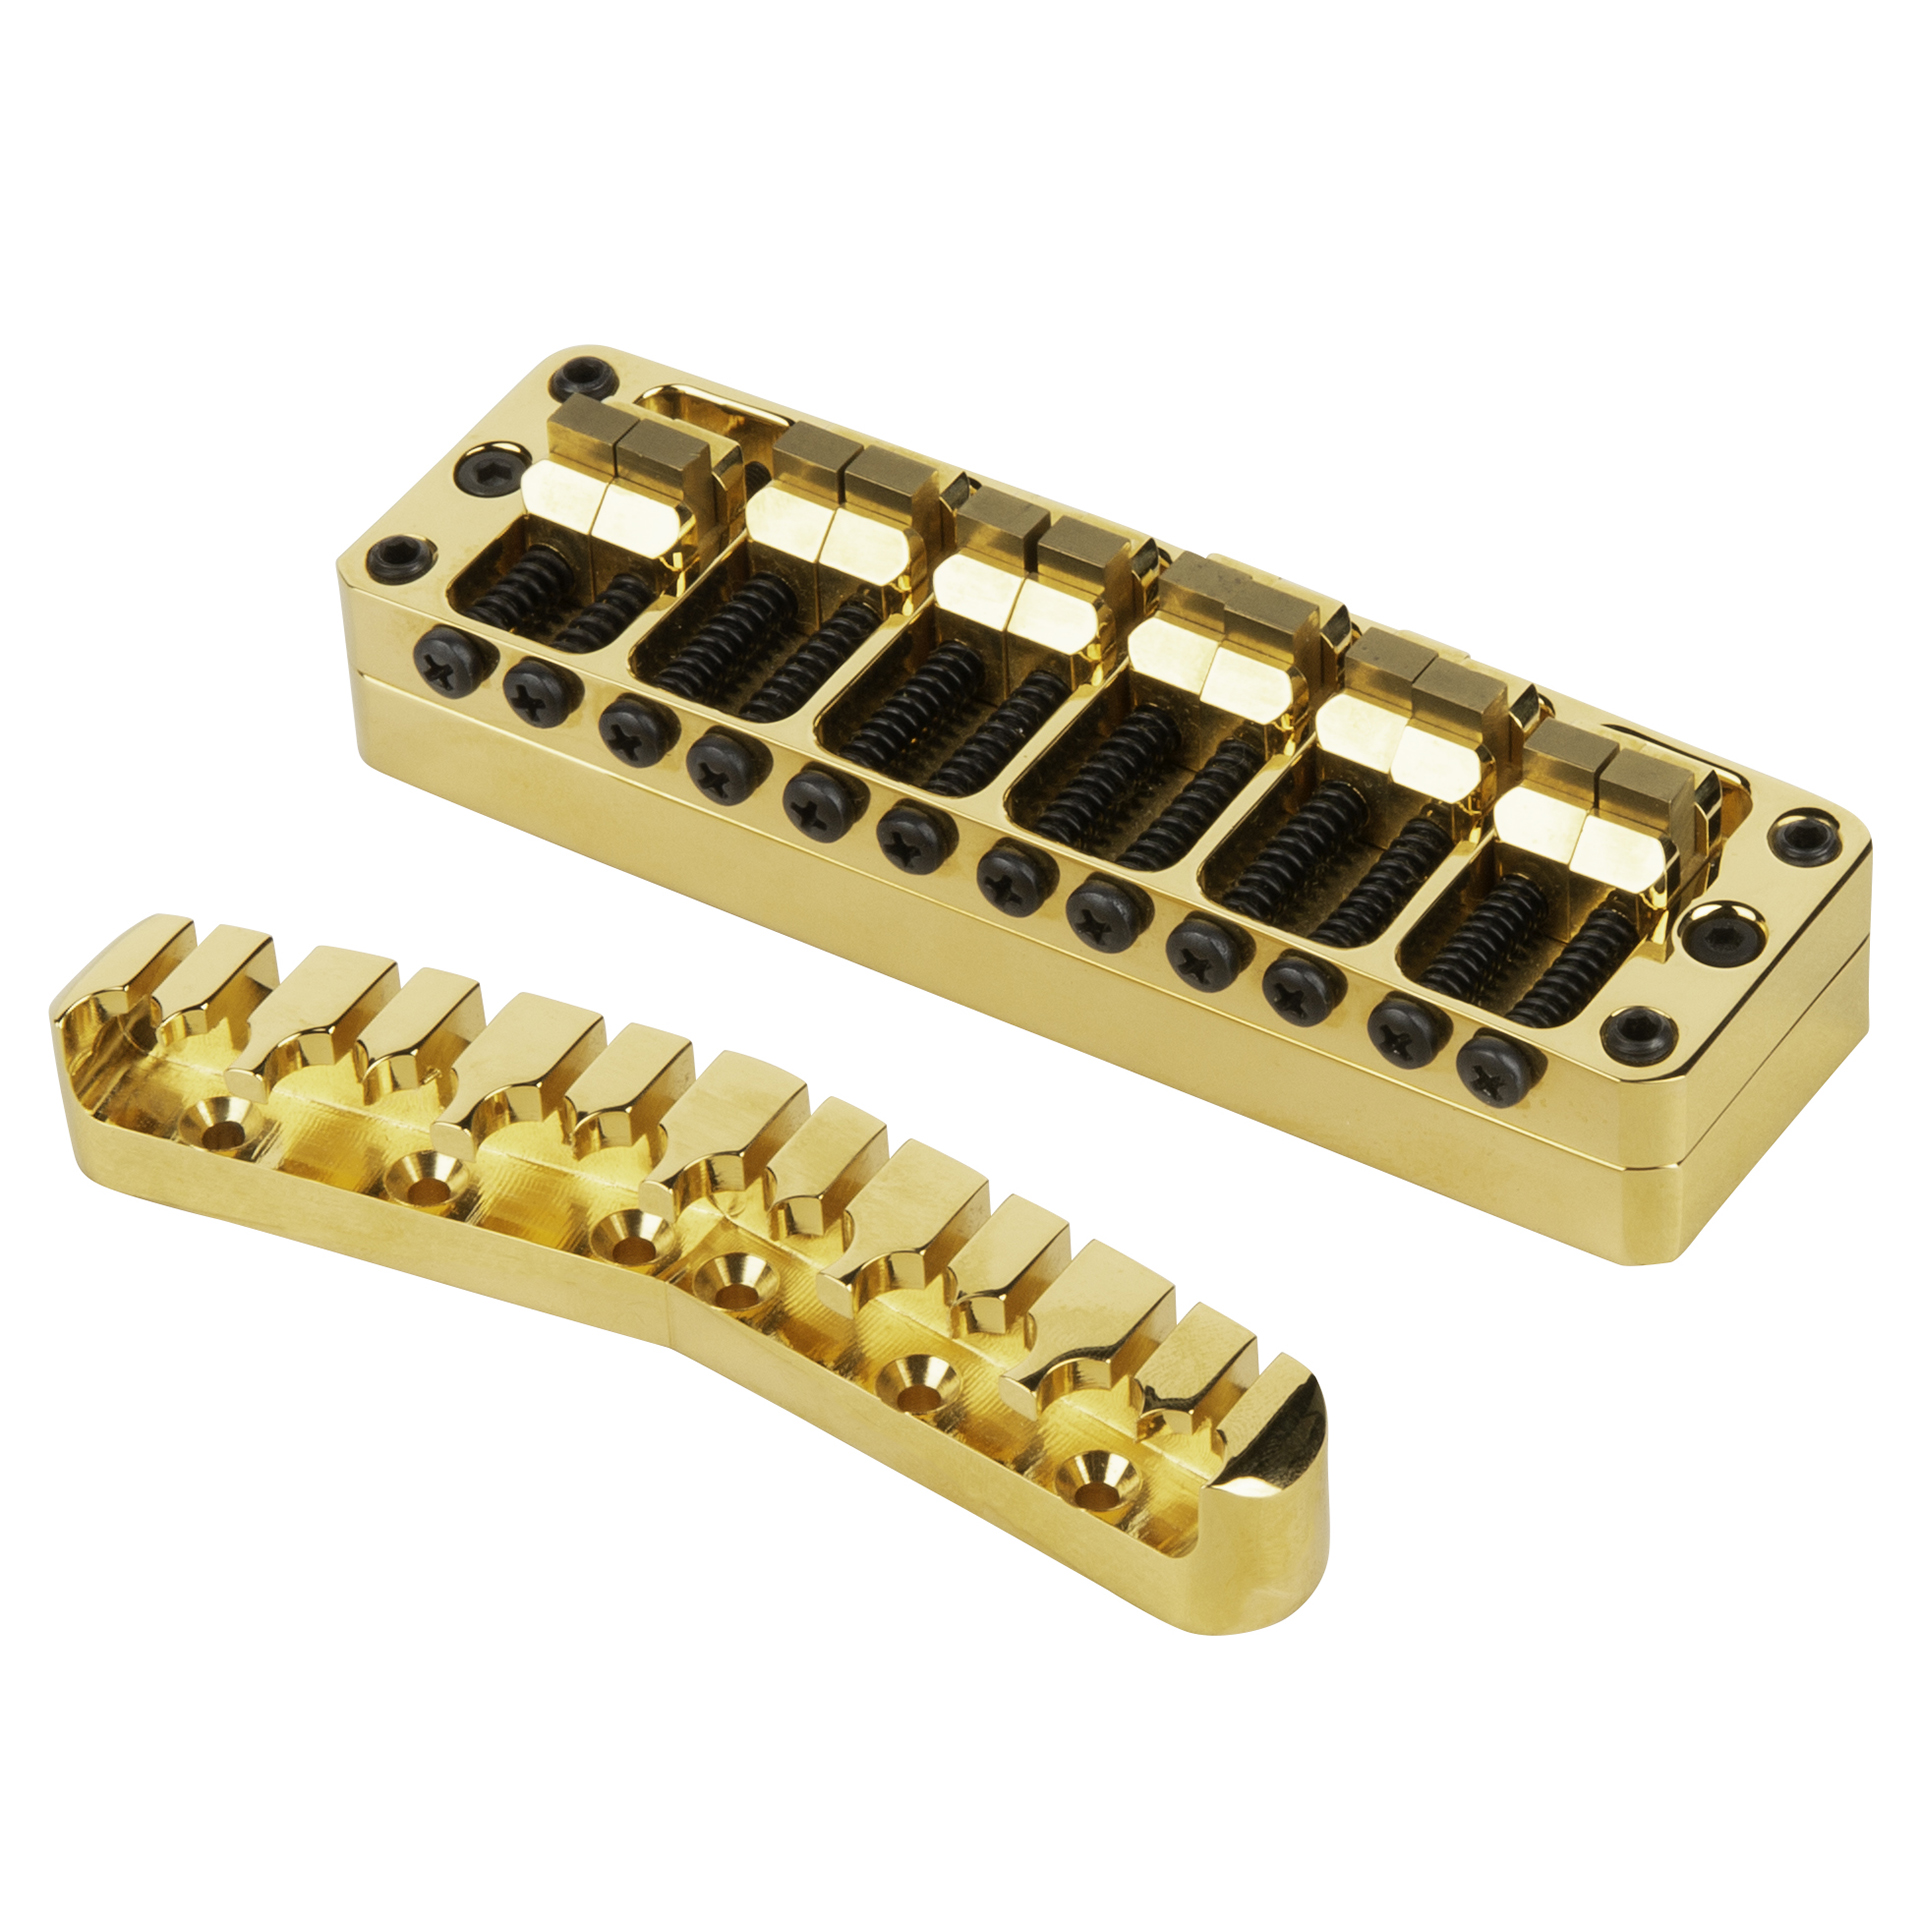 Warwick Parts - 3D Bridge + Tailpiece, 12-String, Brass - Gold